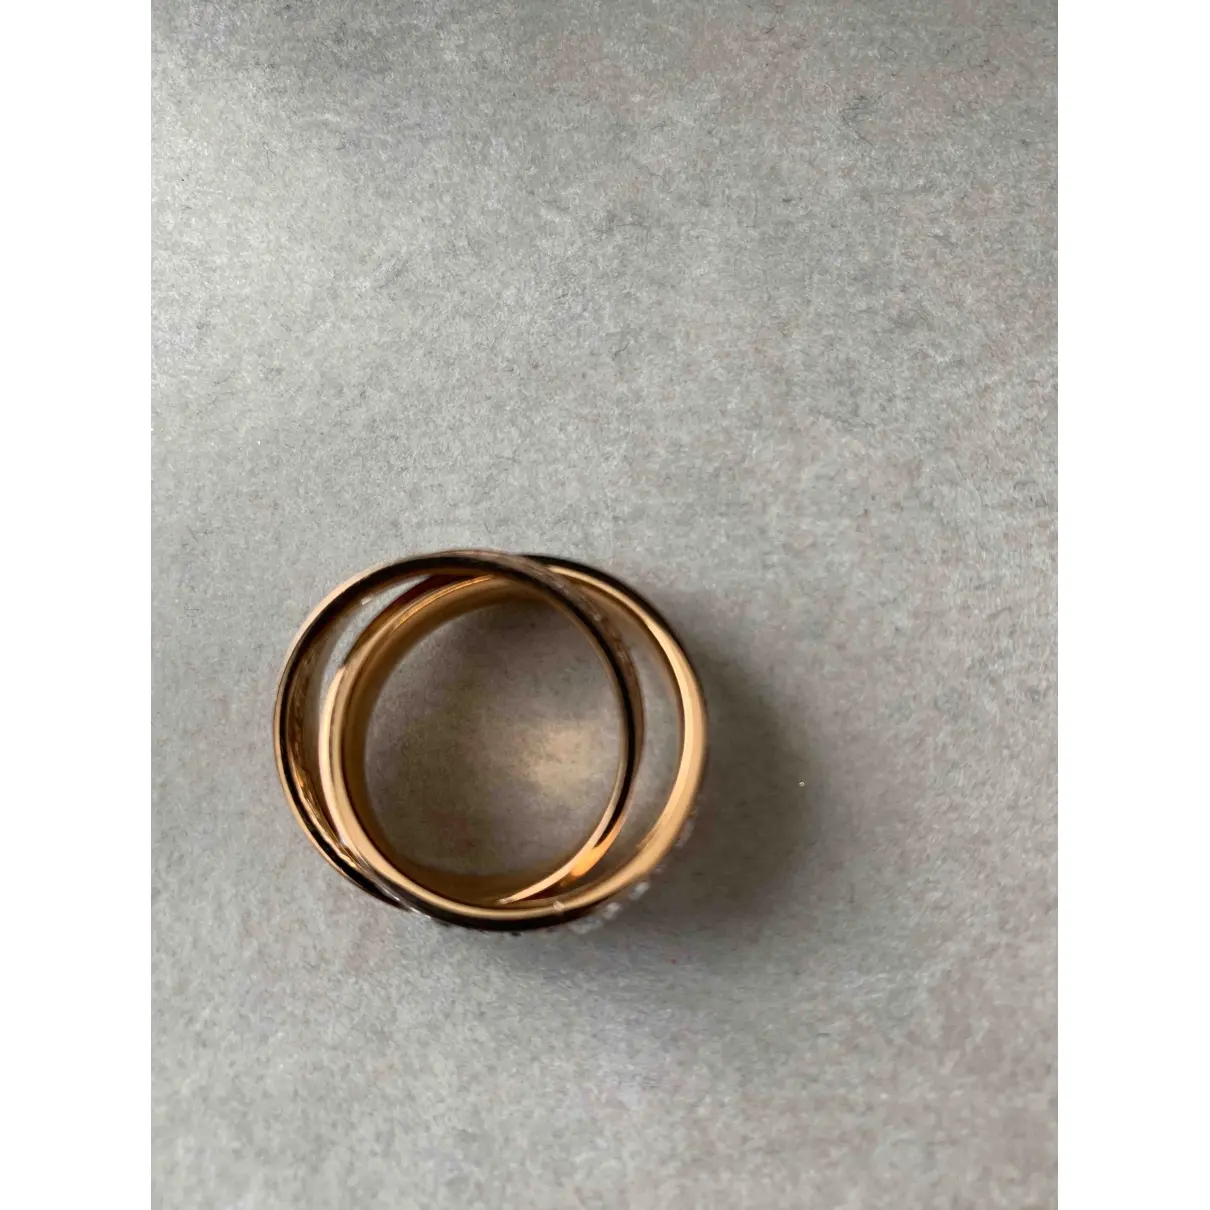 Michael Kors Ring for sale